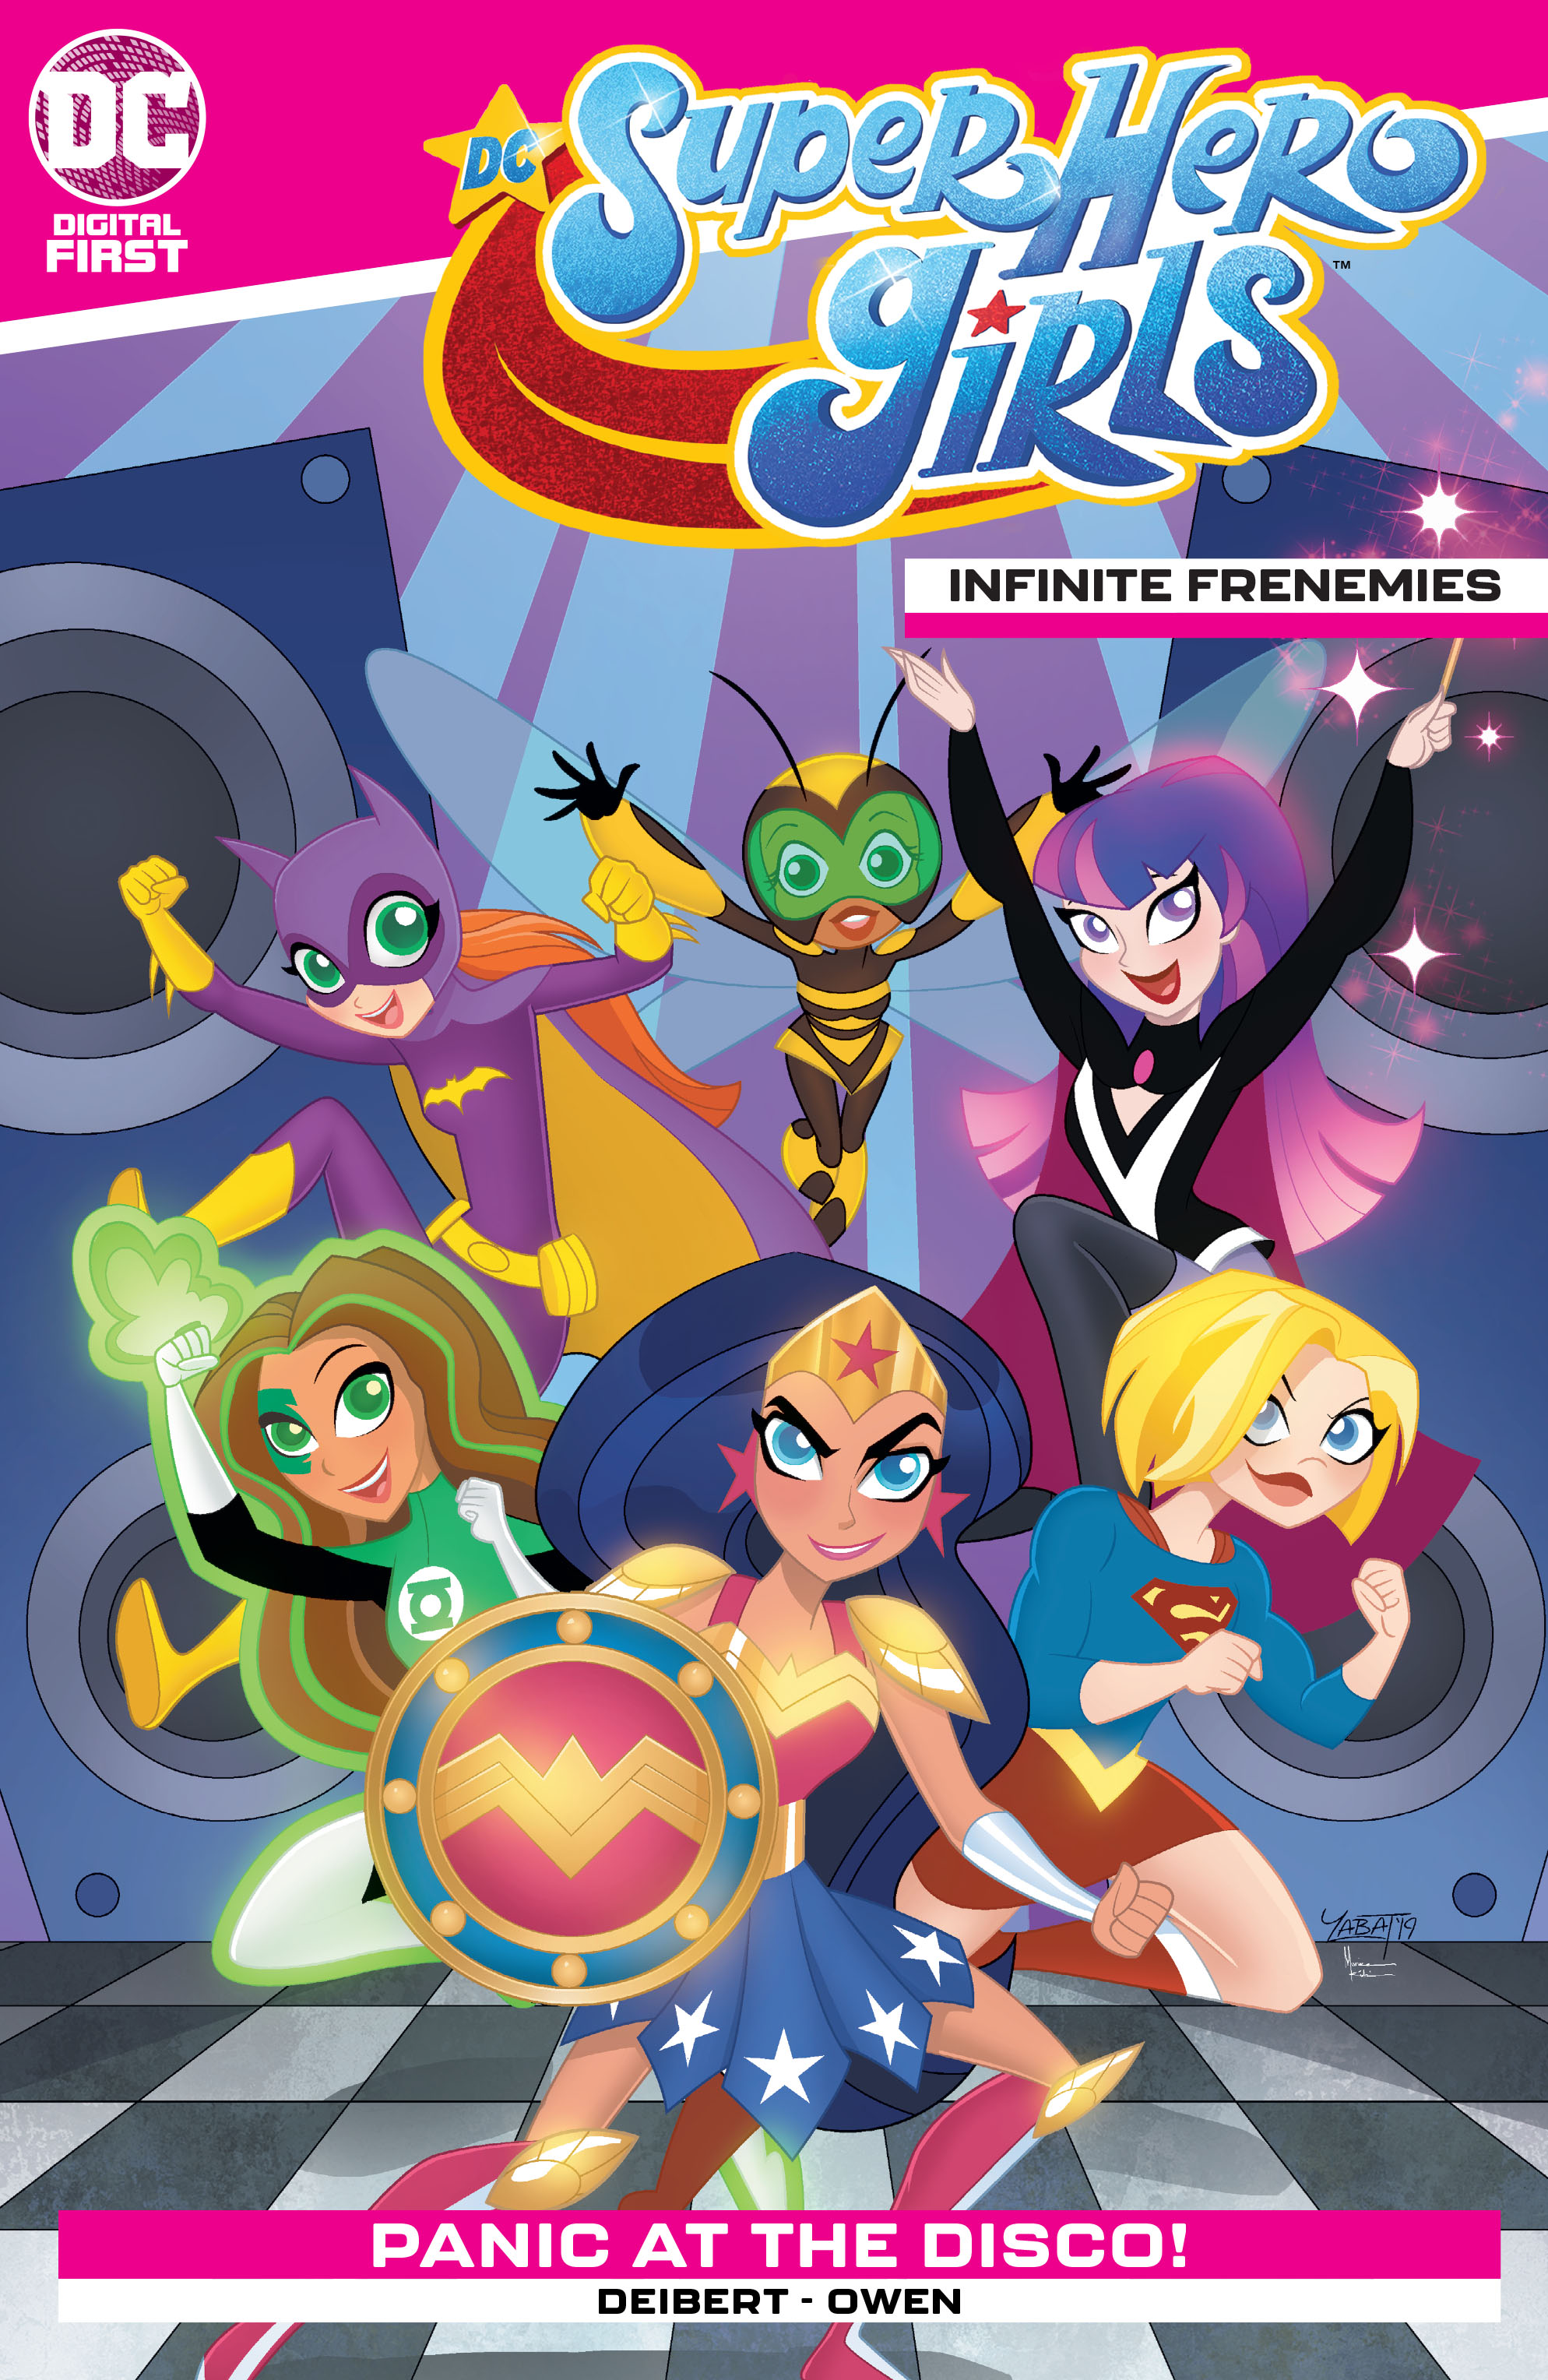 DC Super Hero Girls: Infinite Frenemies (2020-): Chapter 2 - Page 1